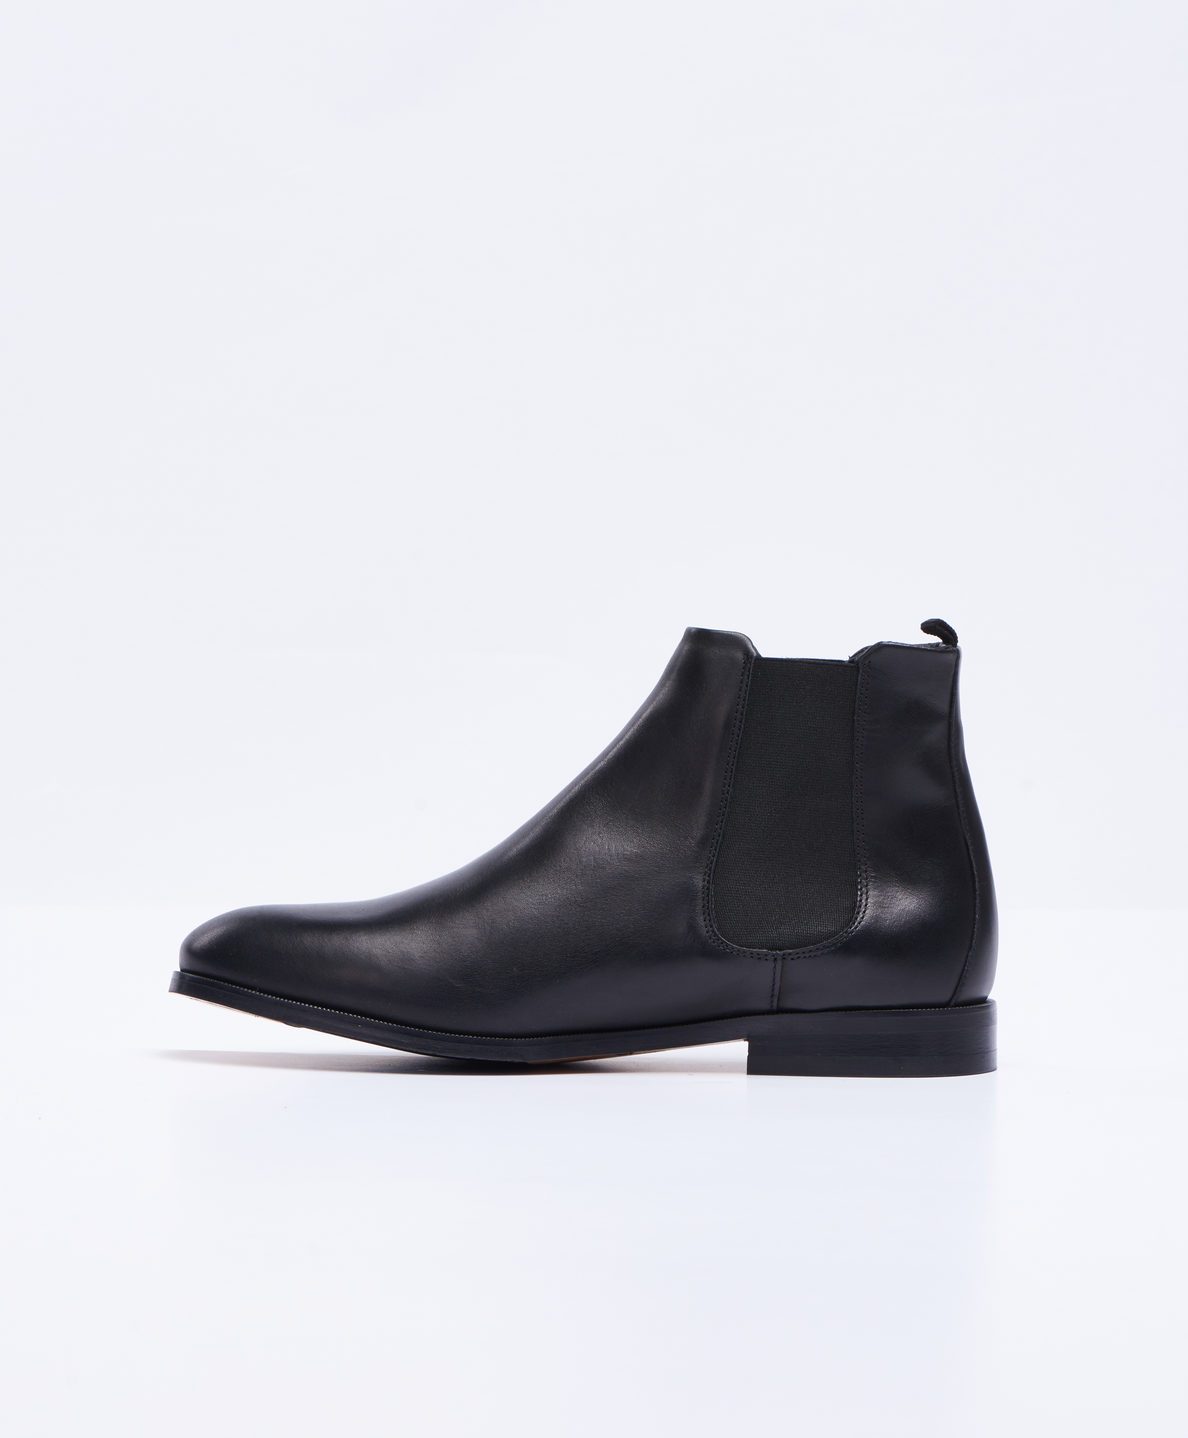 Royal RepubliQ Shoes Men’s Chelsea Boot - Black